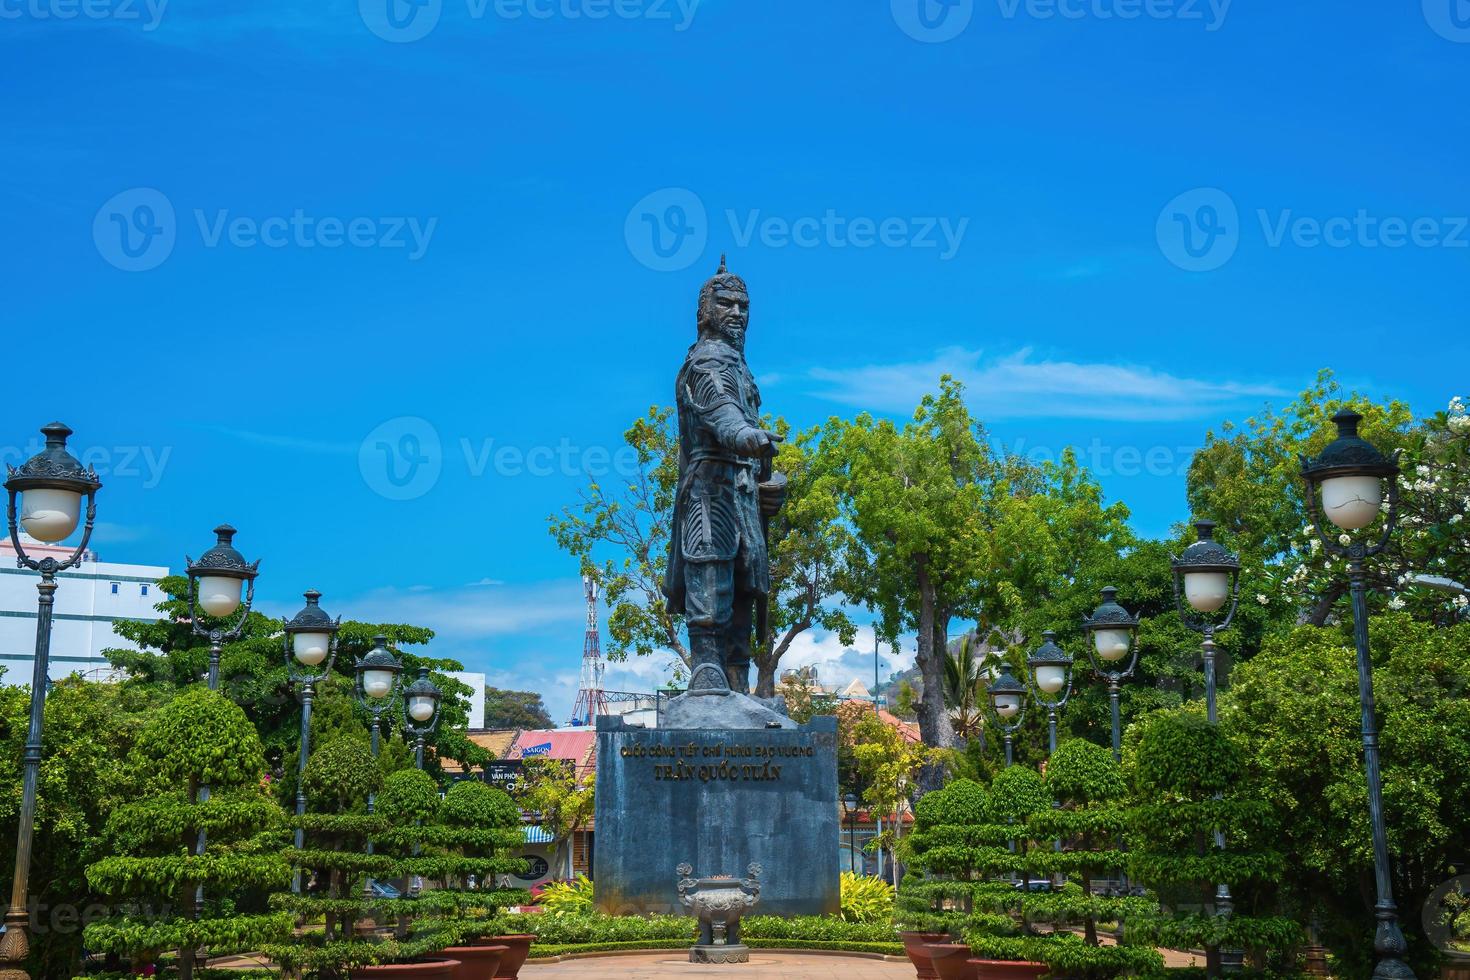 statue de tran hung dao dans la ville de vung tau au vietnam. monument du chef militaire sur fond de ciel bleu photo